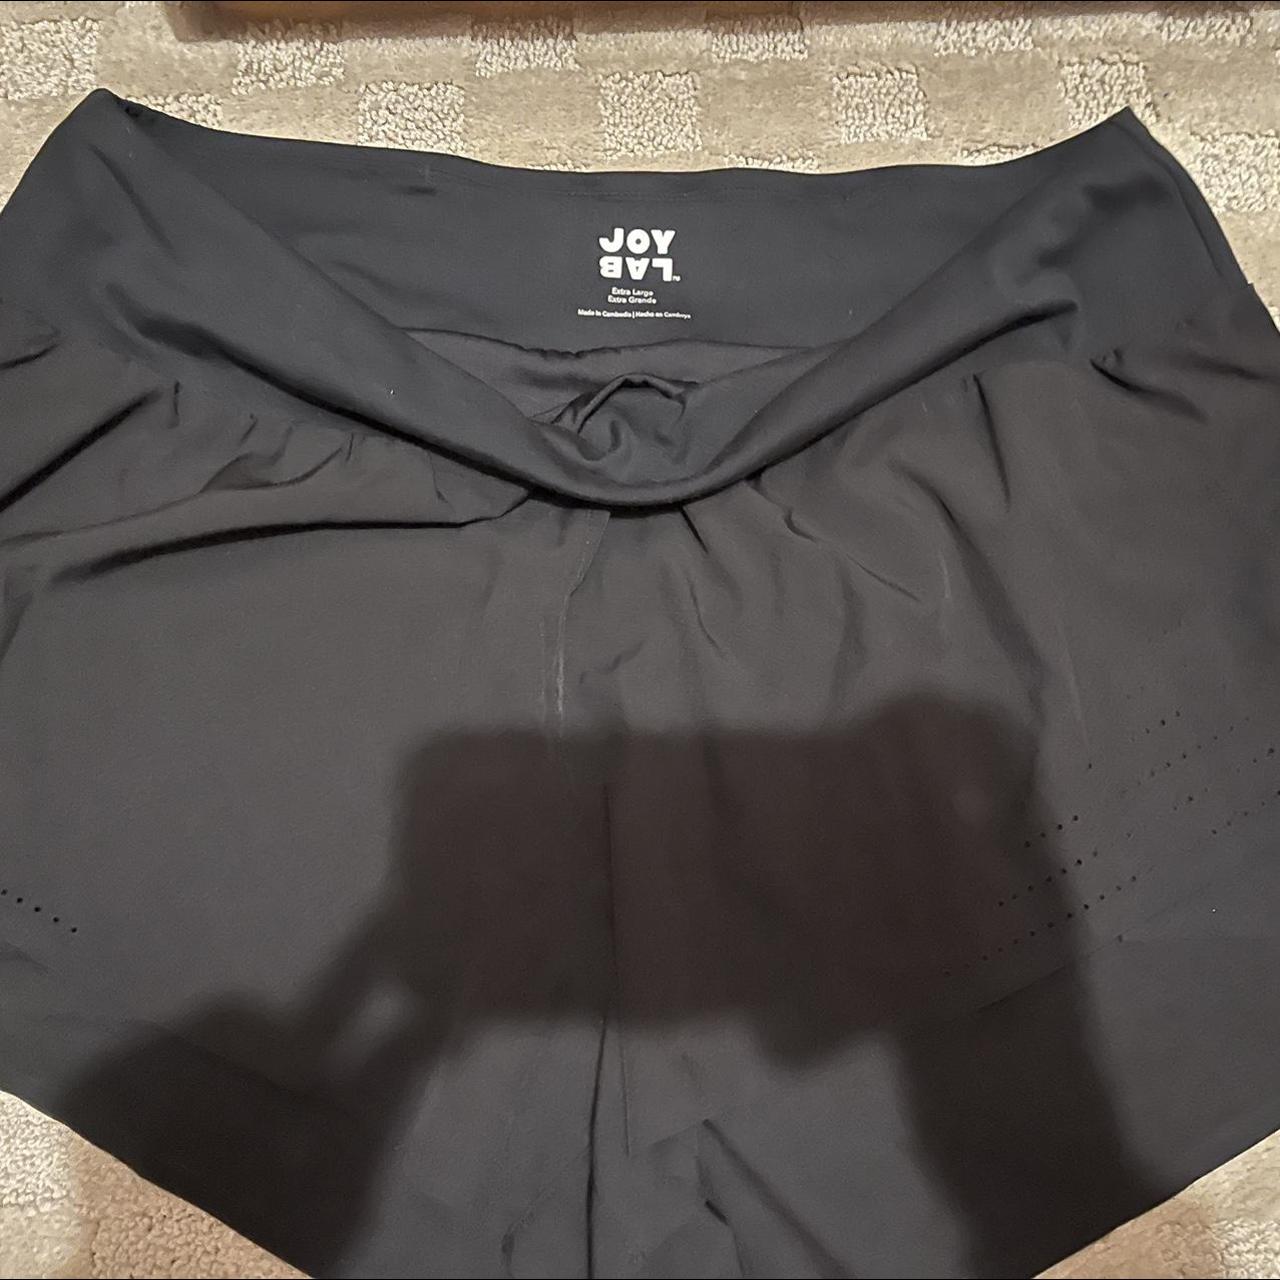 black joy lab shorts #shorts #joylab #target - Depop